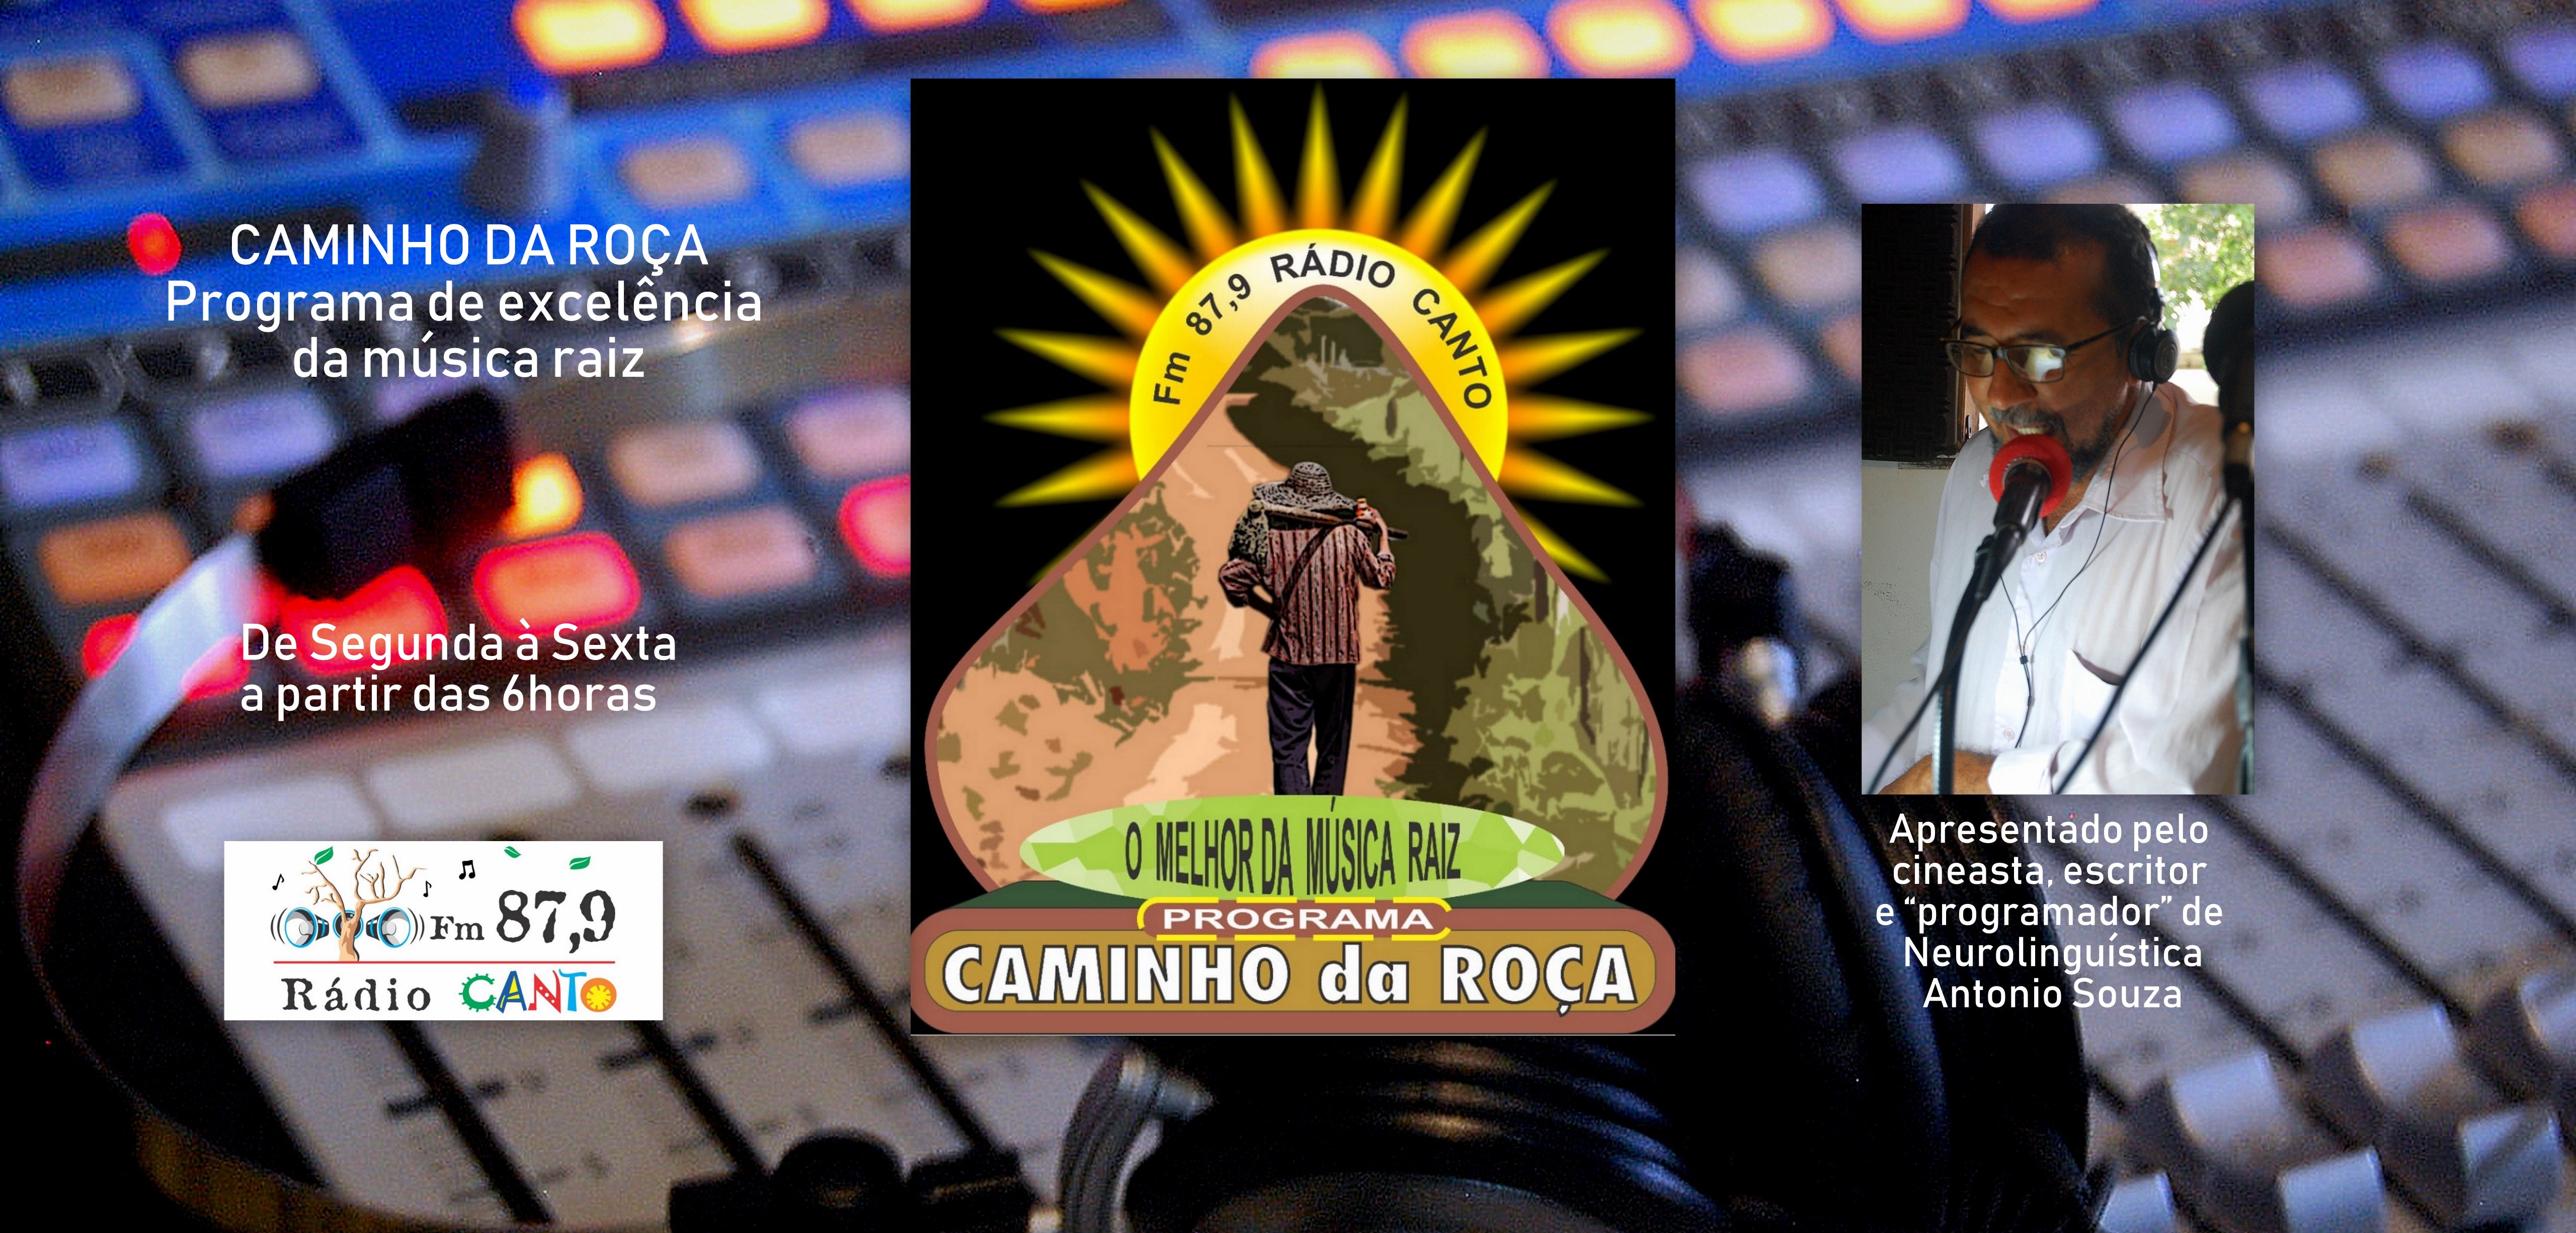  PROGRAMA CAMINHO DA ROÇA - RÁDIO CANTO FM 87,9